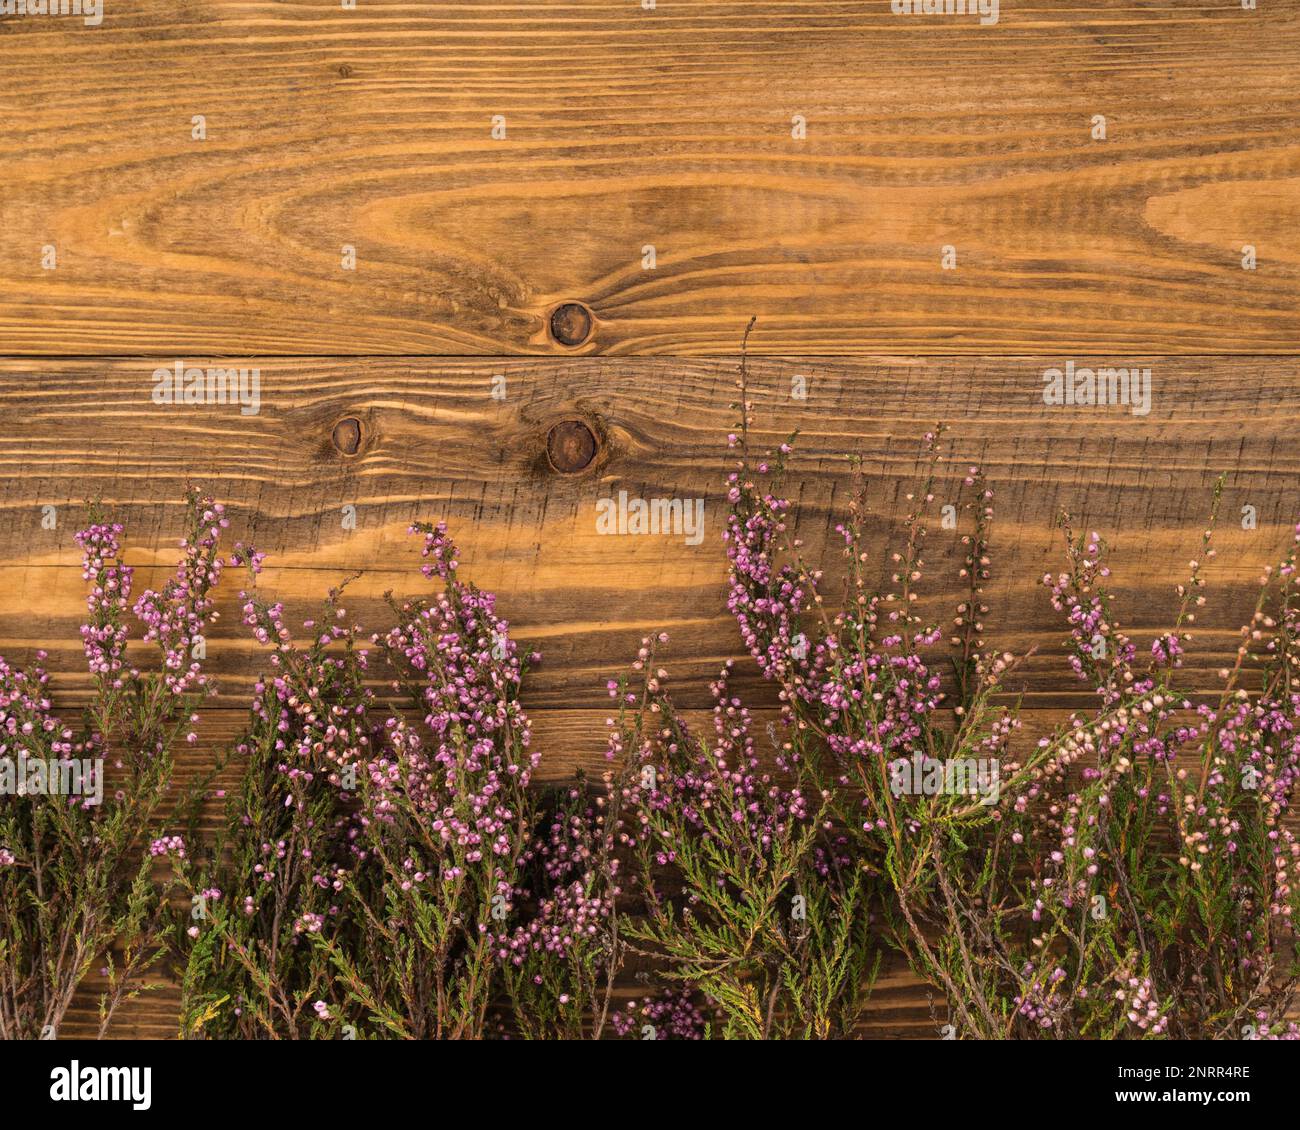 Grunge Dunkle Oberfläche von Old Brown Yellow Grobe Planken rustikaler ländlicher, strukturierter Holzhintergrund Horizontal mit lila, melierten Blüten. Klassische Textur. Stockfoto